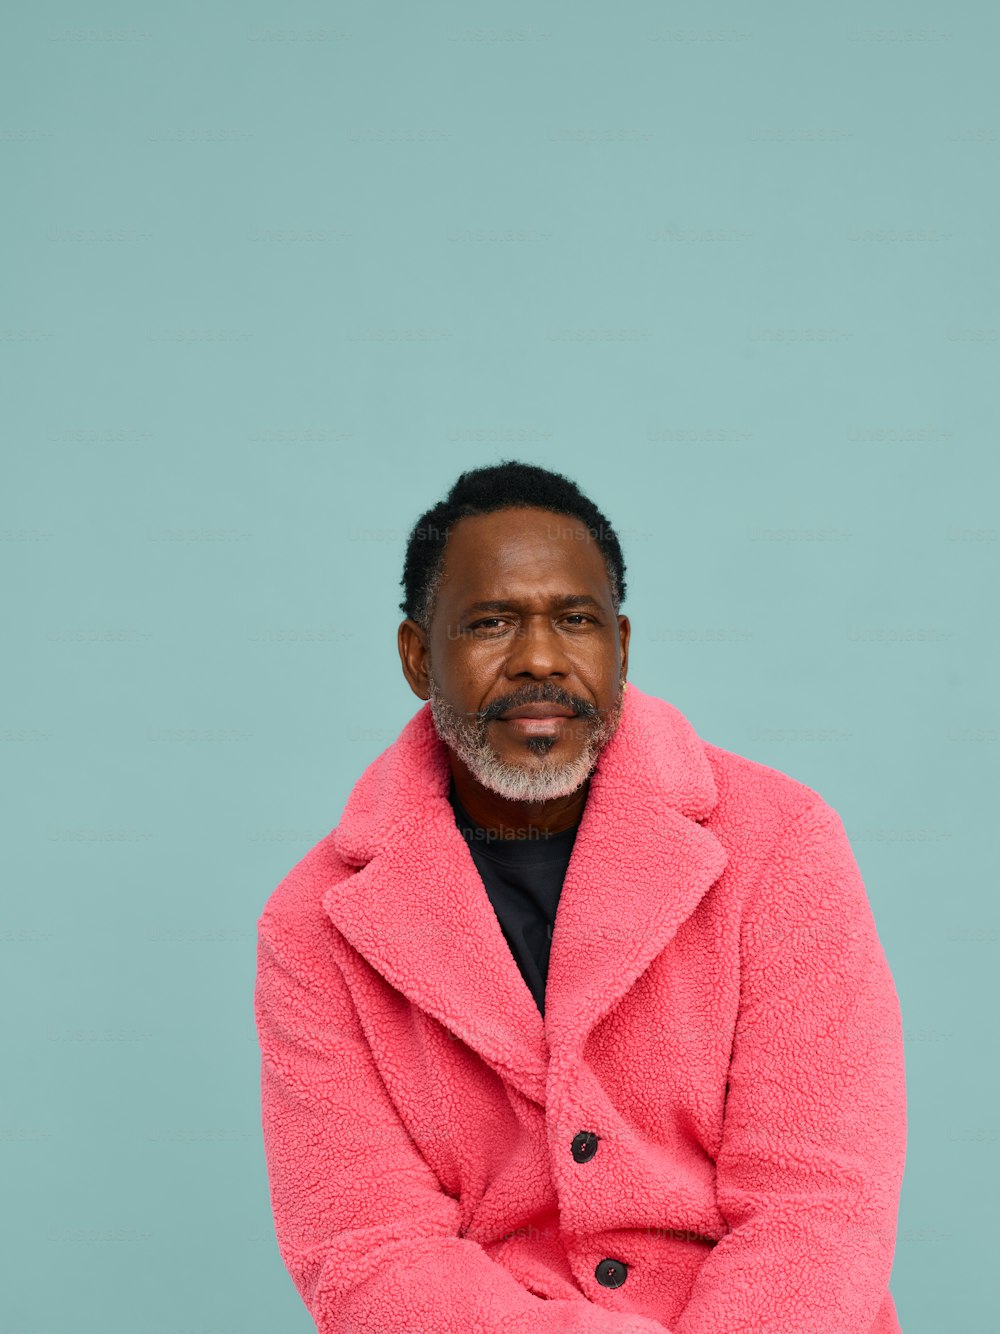 분홍색 코트를 입은 남자가 의자에 앉아 있다